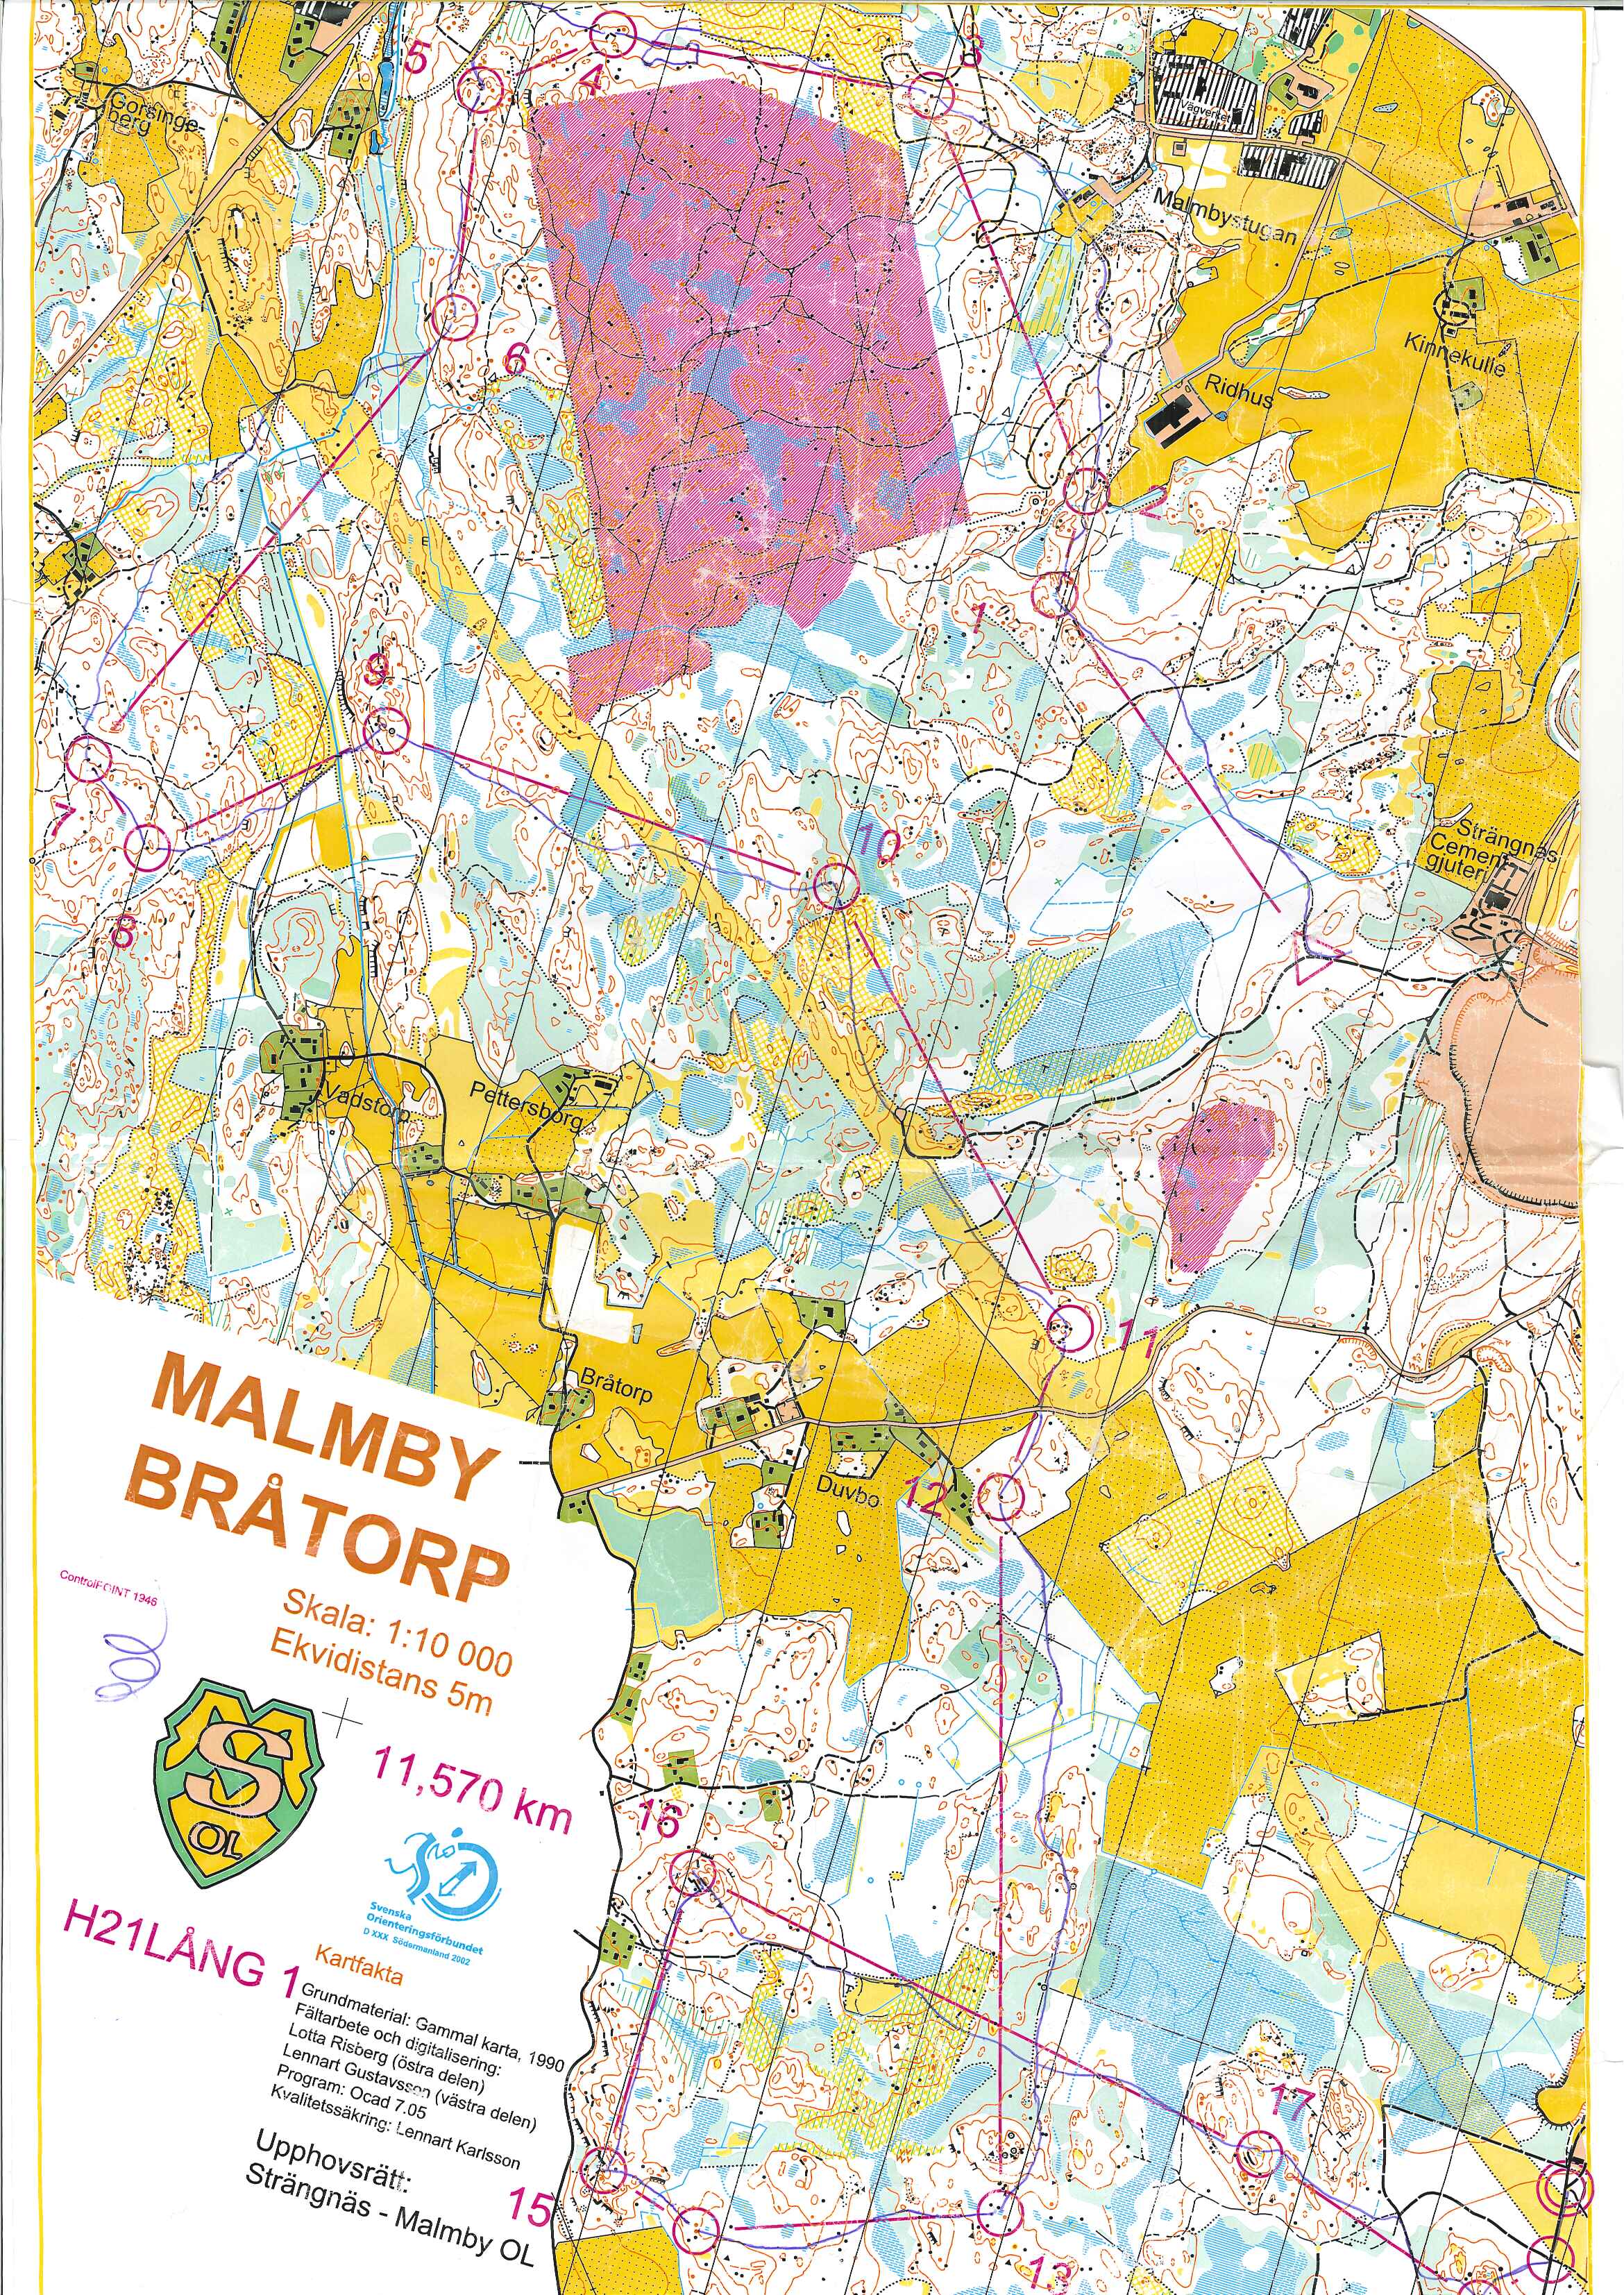 Strängnäs-Malmby (01-04-2002)